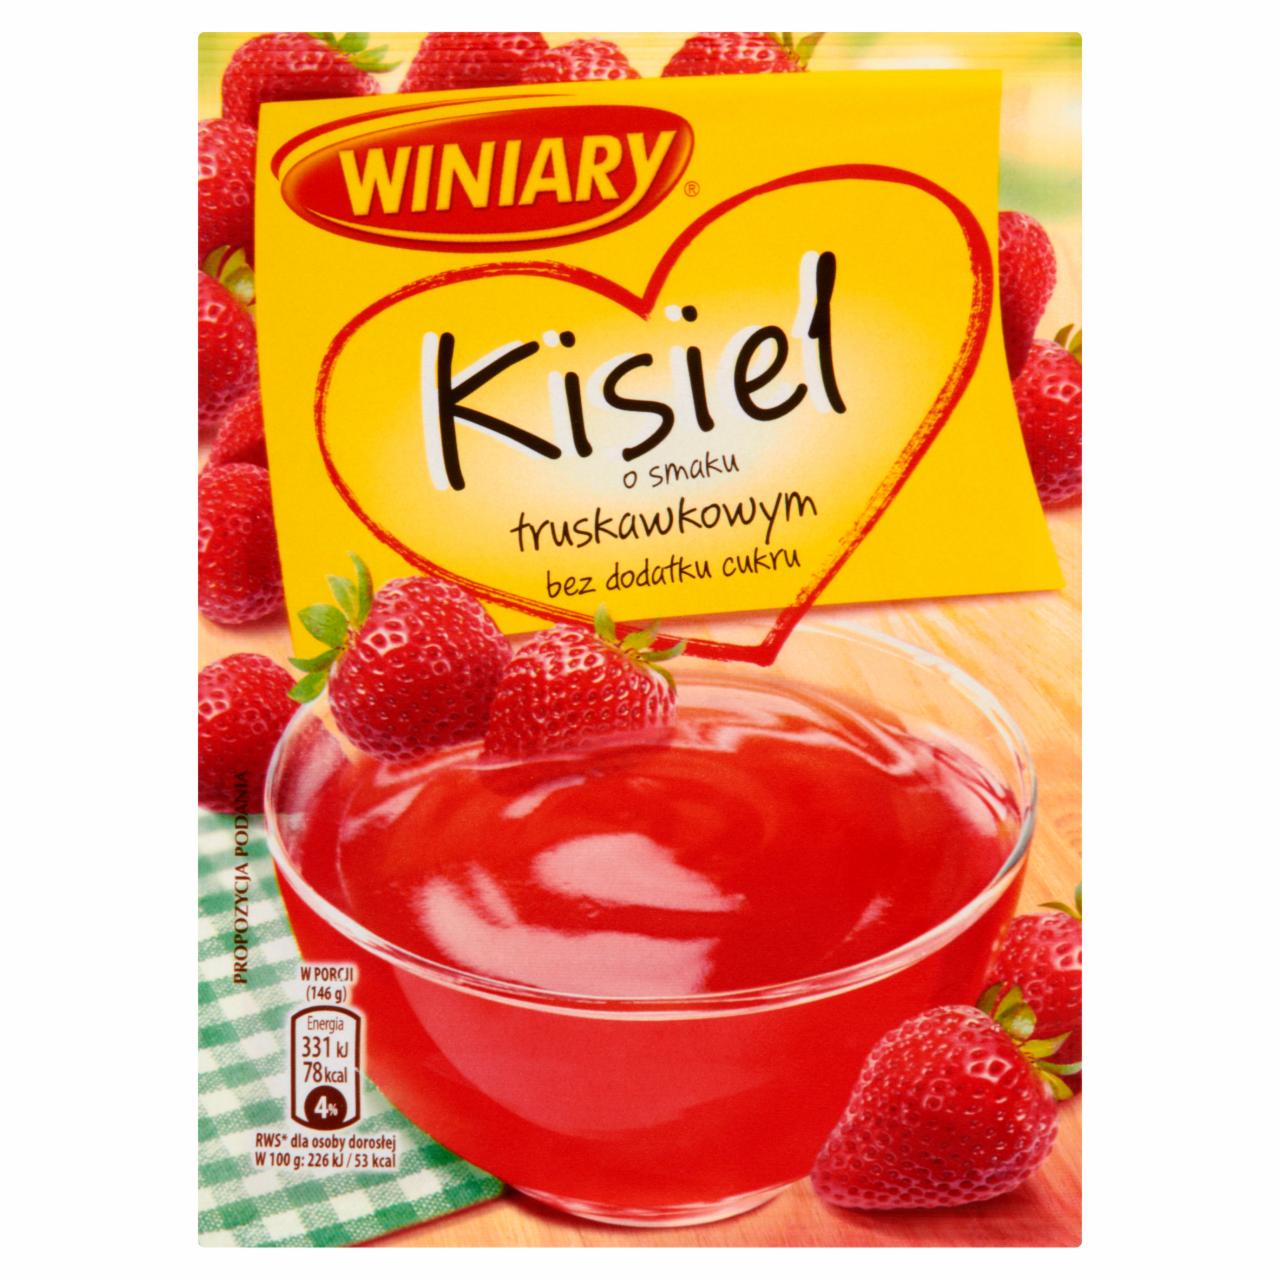 Zdjęcia - Winiary Kisiel o smaku truskawkowym bez dodatku cukru 36 g